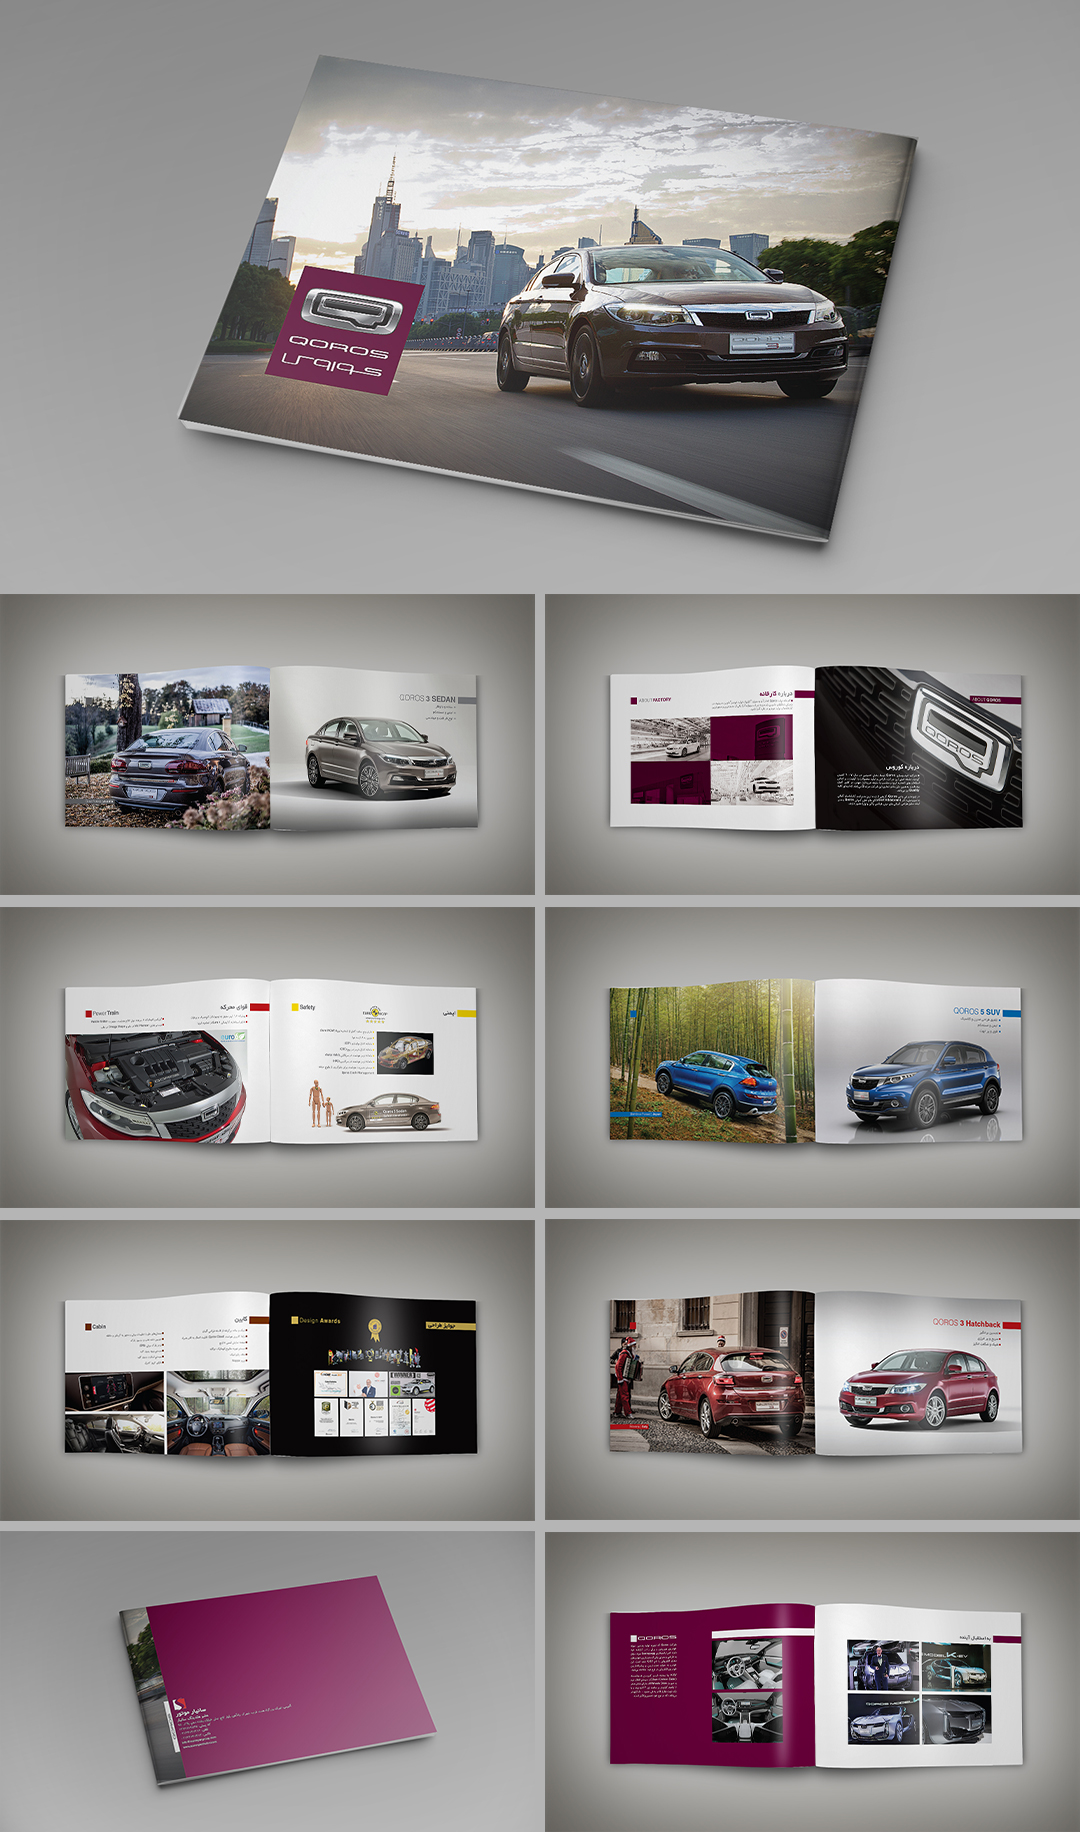 Qoros Cars catalouge mohsen hashemi graphic designer layout design cataloge brochure report magazine mag design